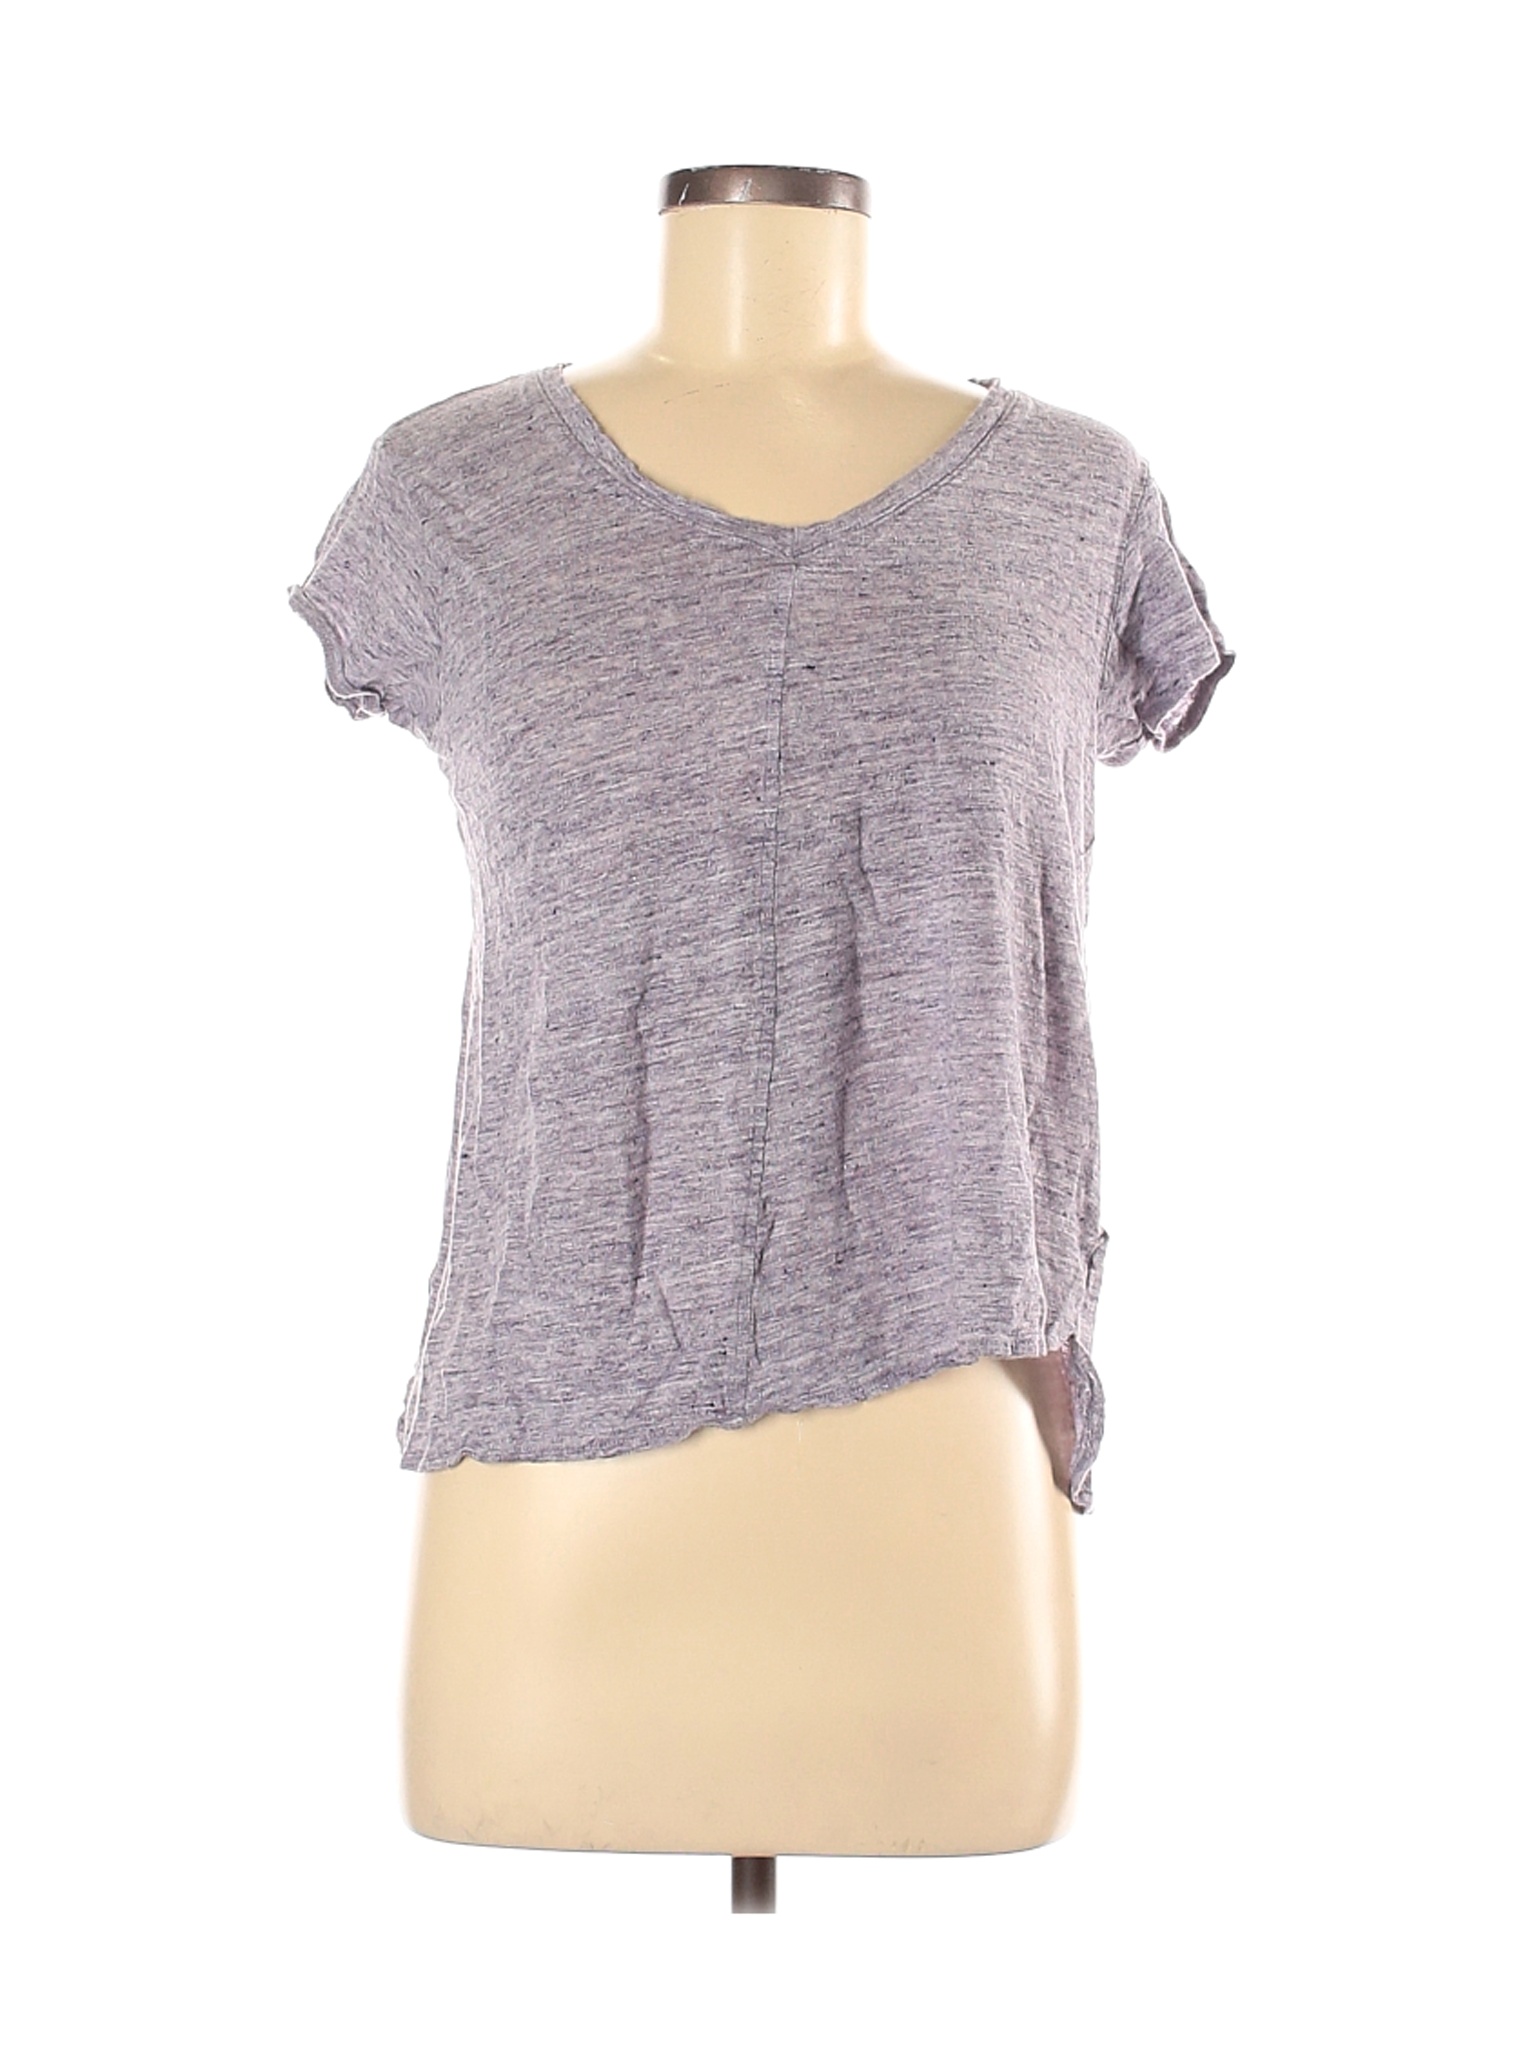 Tahari Women Gray Short Sleeve T-Shirt M | eBay